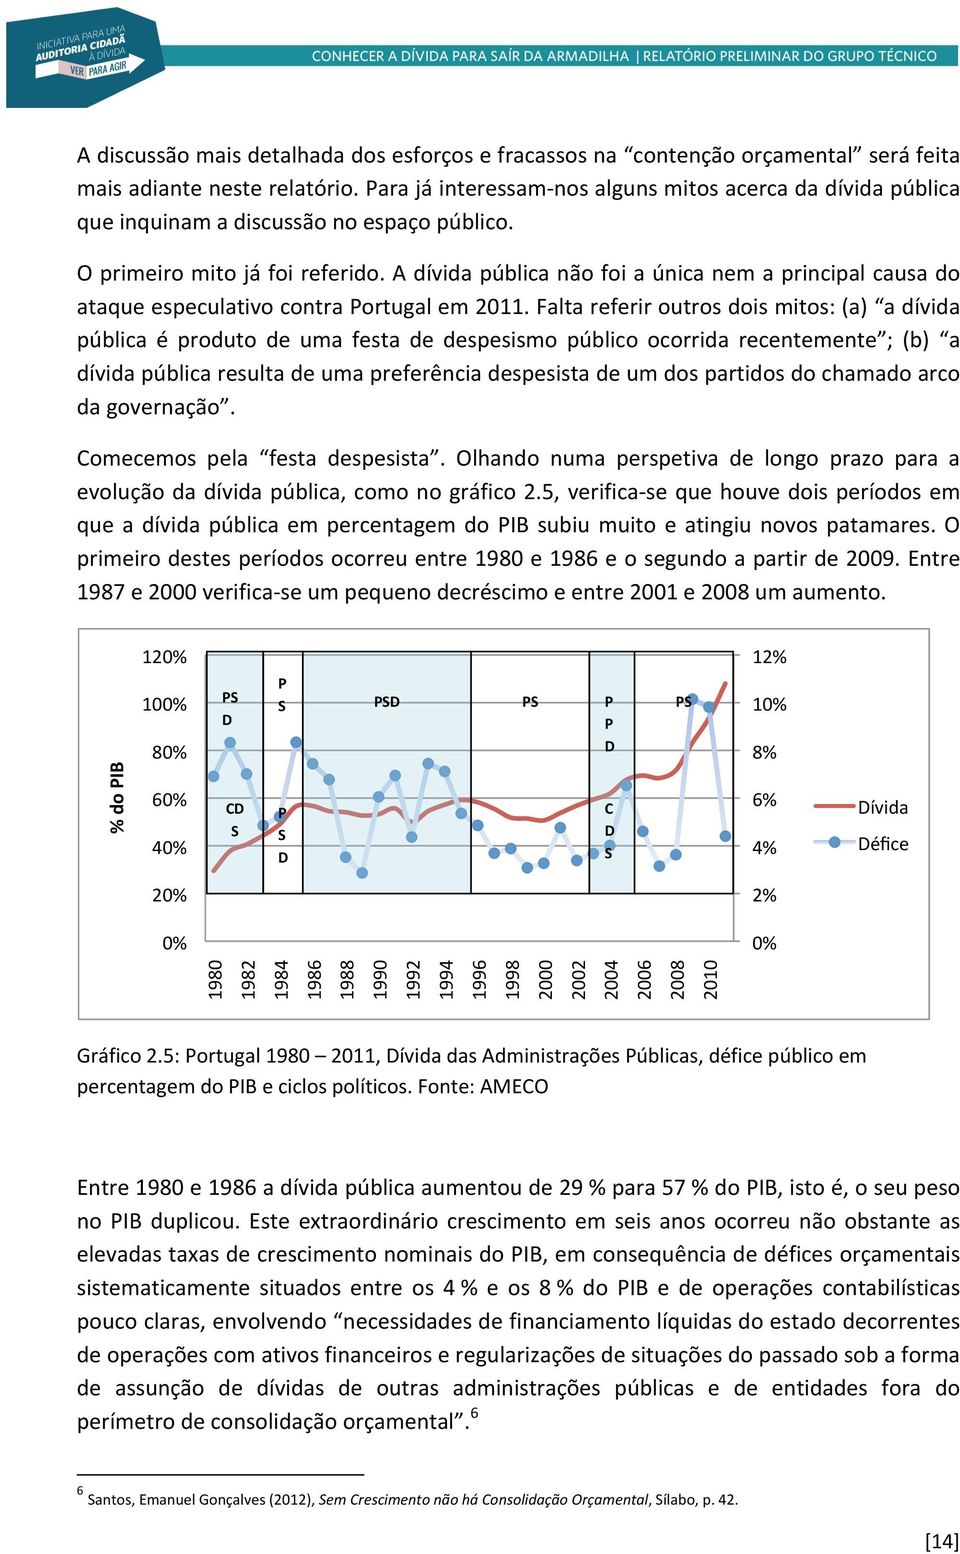 A dívida pública não foi a única nem a principal causa do ataque especulativo contra Portugal em 2011.